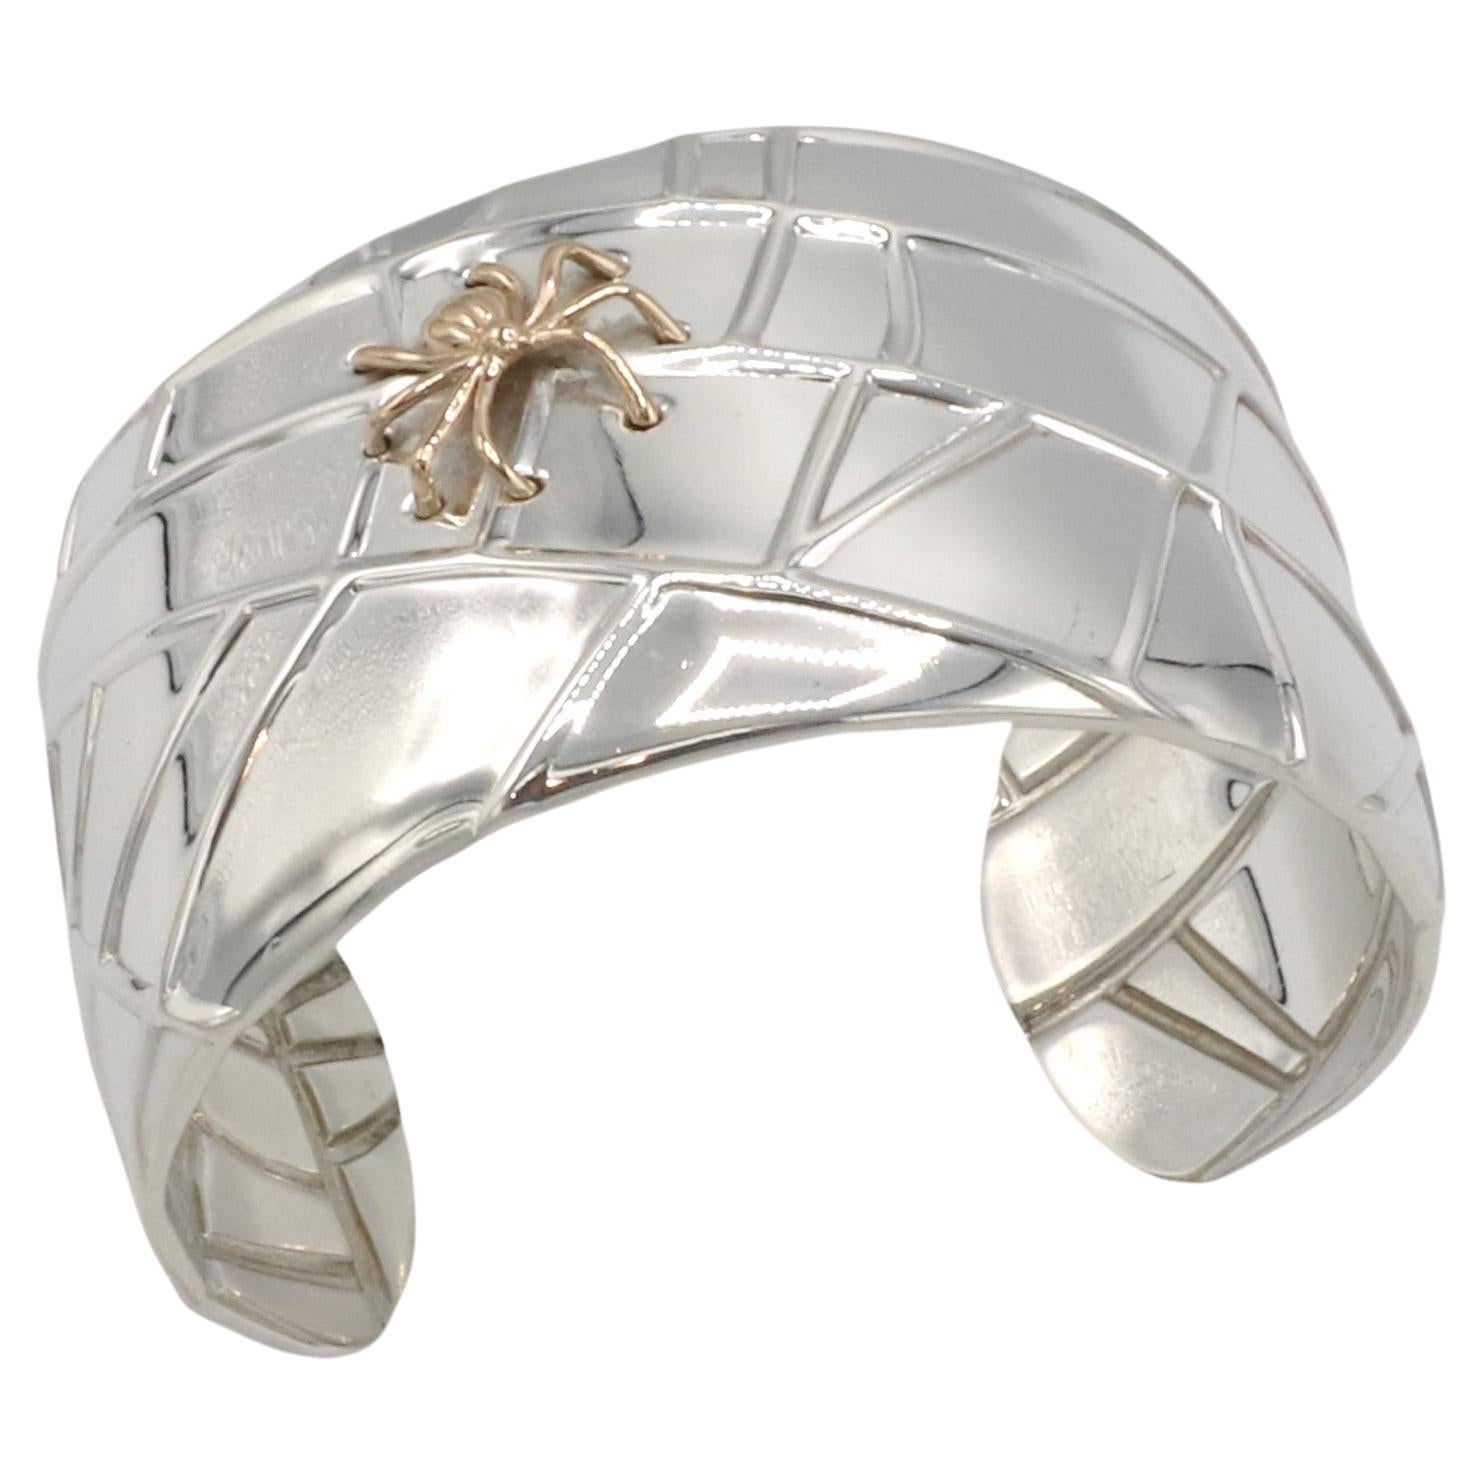 Tiffany & Co. Bracelet manchette araignée en argent et or 
Métal : Argent sterling, or 18k
Poids : 92,07 grammes
Largeur : 38 mm
Diamètre : 60 mm
Circonférence : Environ 7 pouces